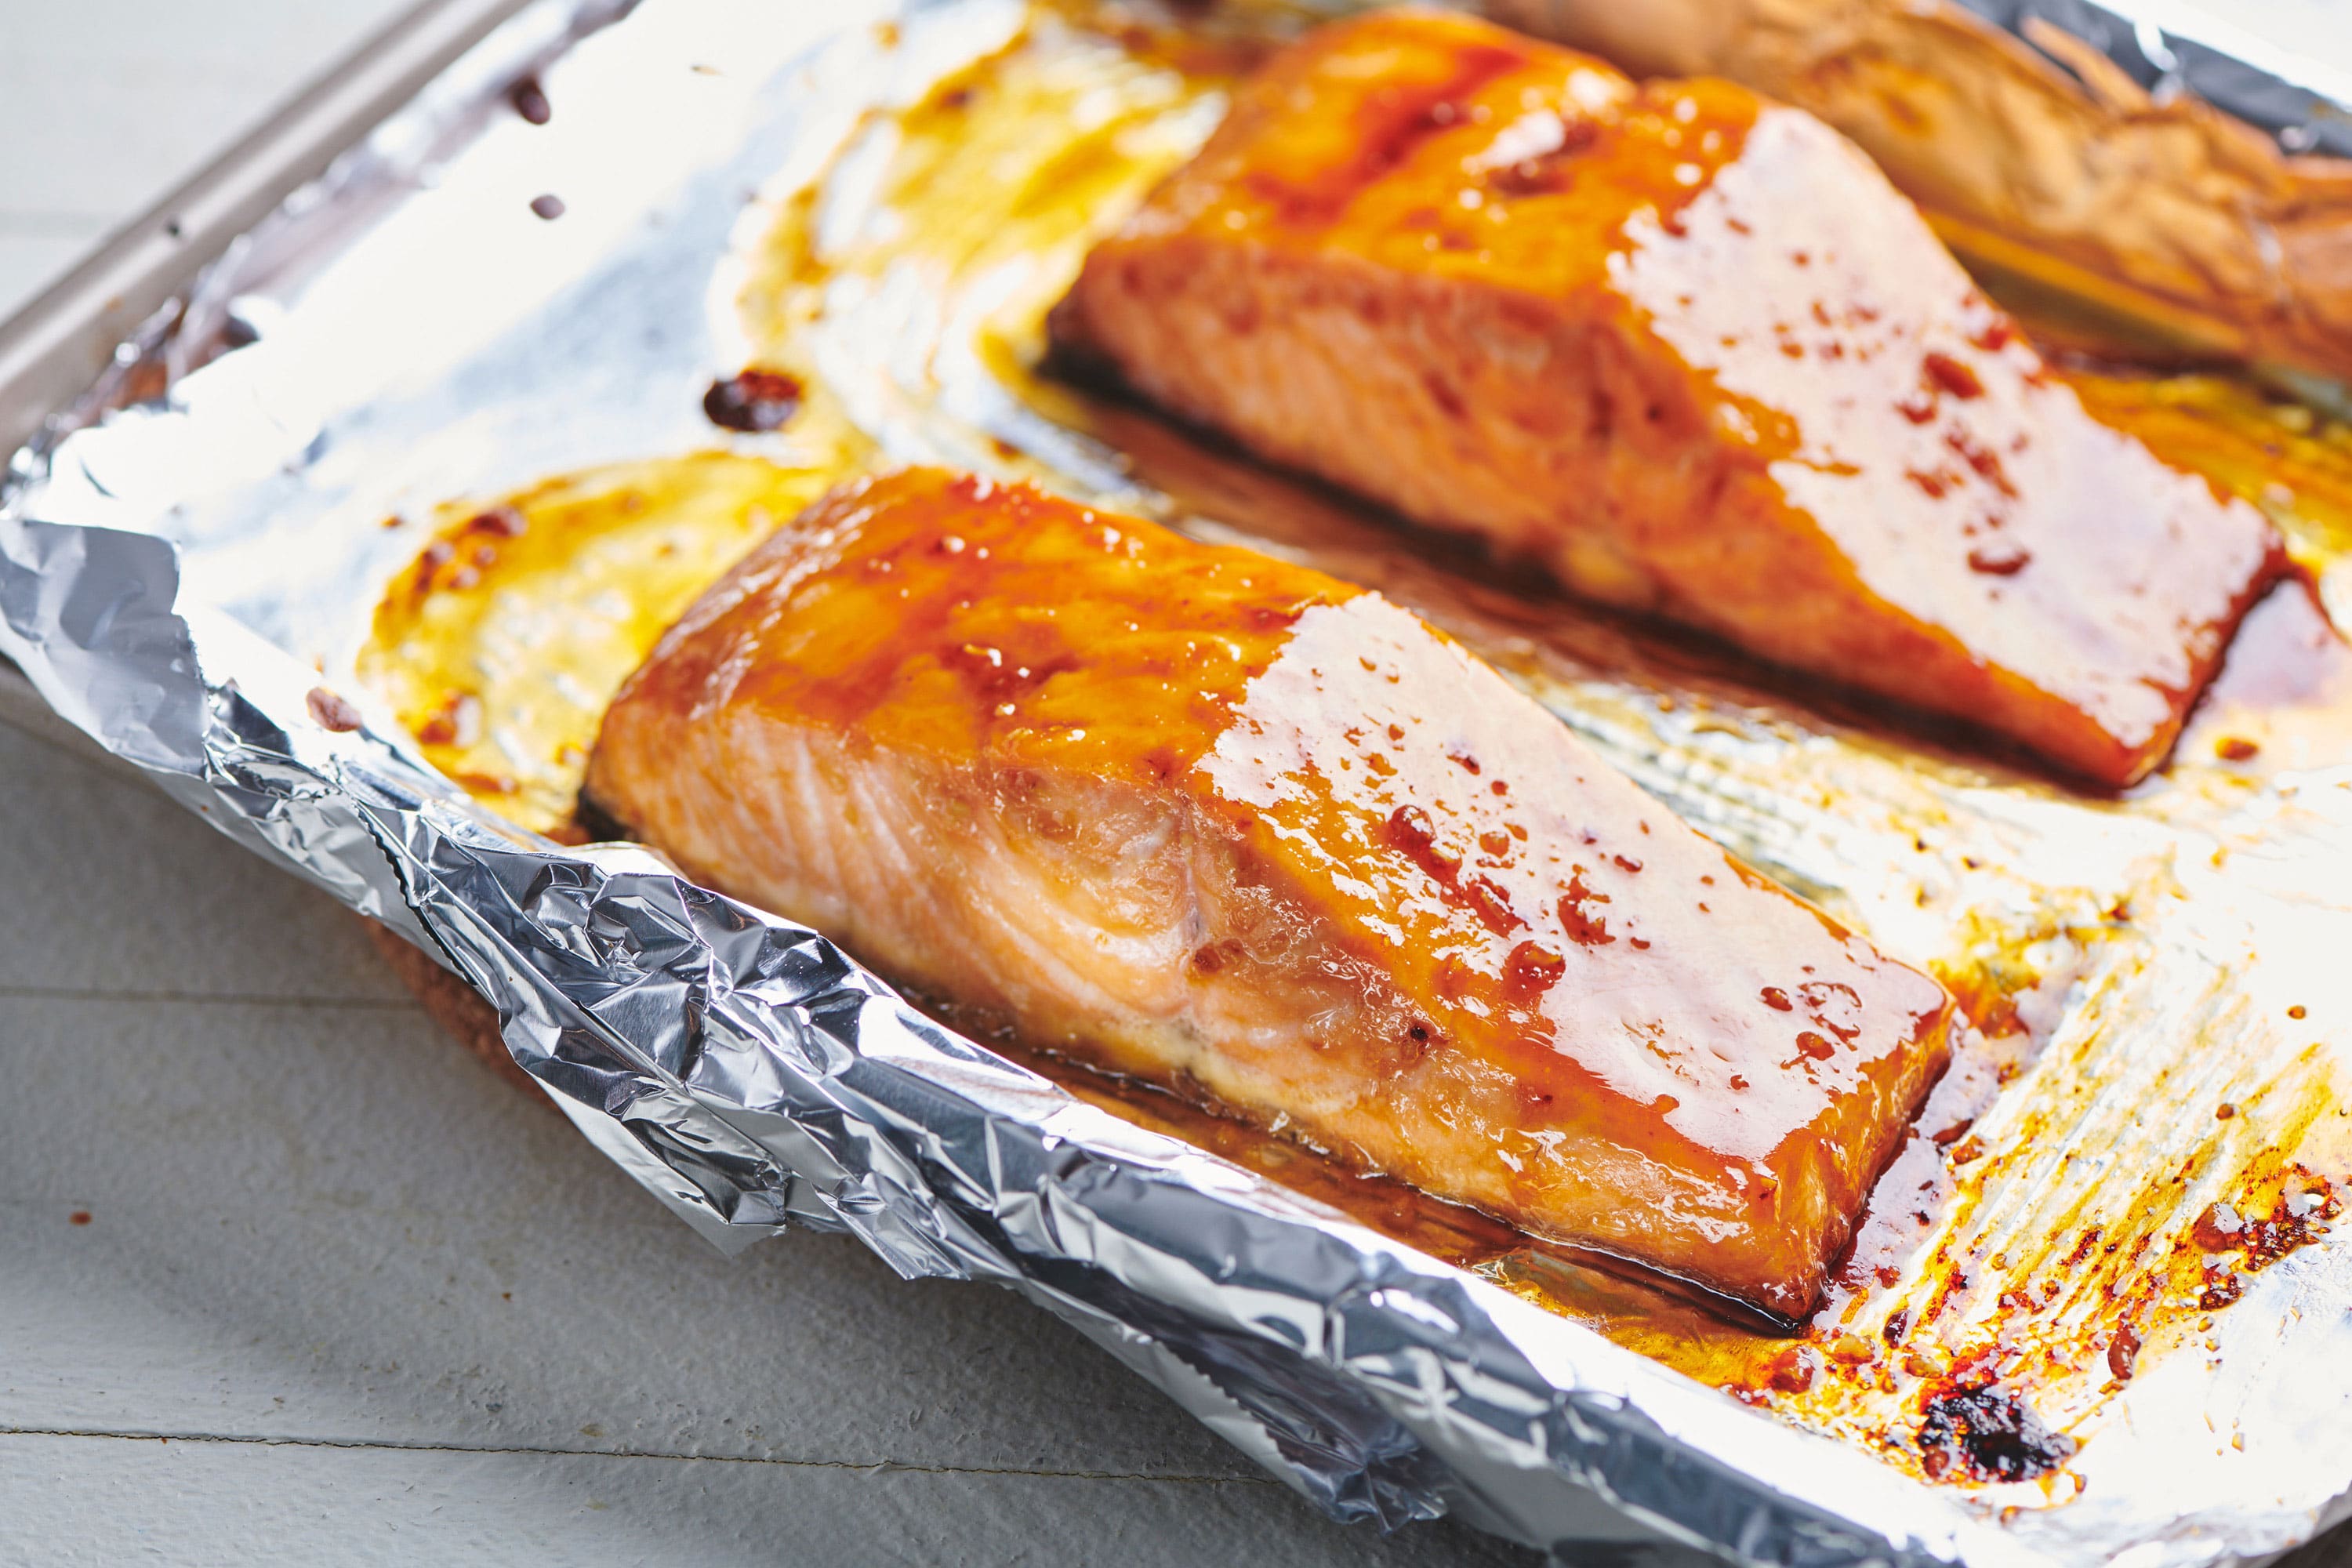 Baked honey-ginger glazed salmon on foil-lined baking sheet.